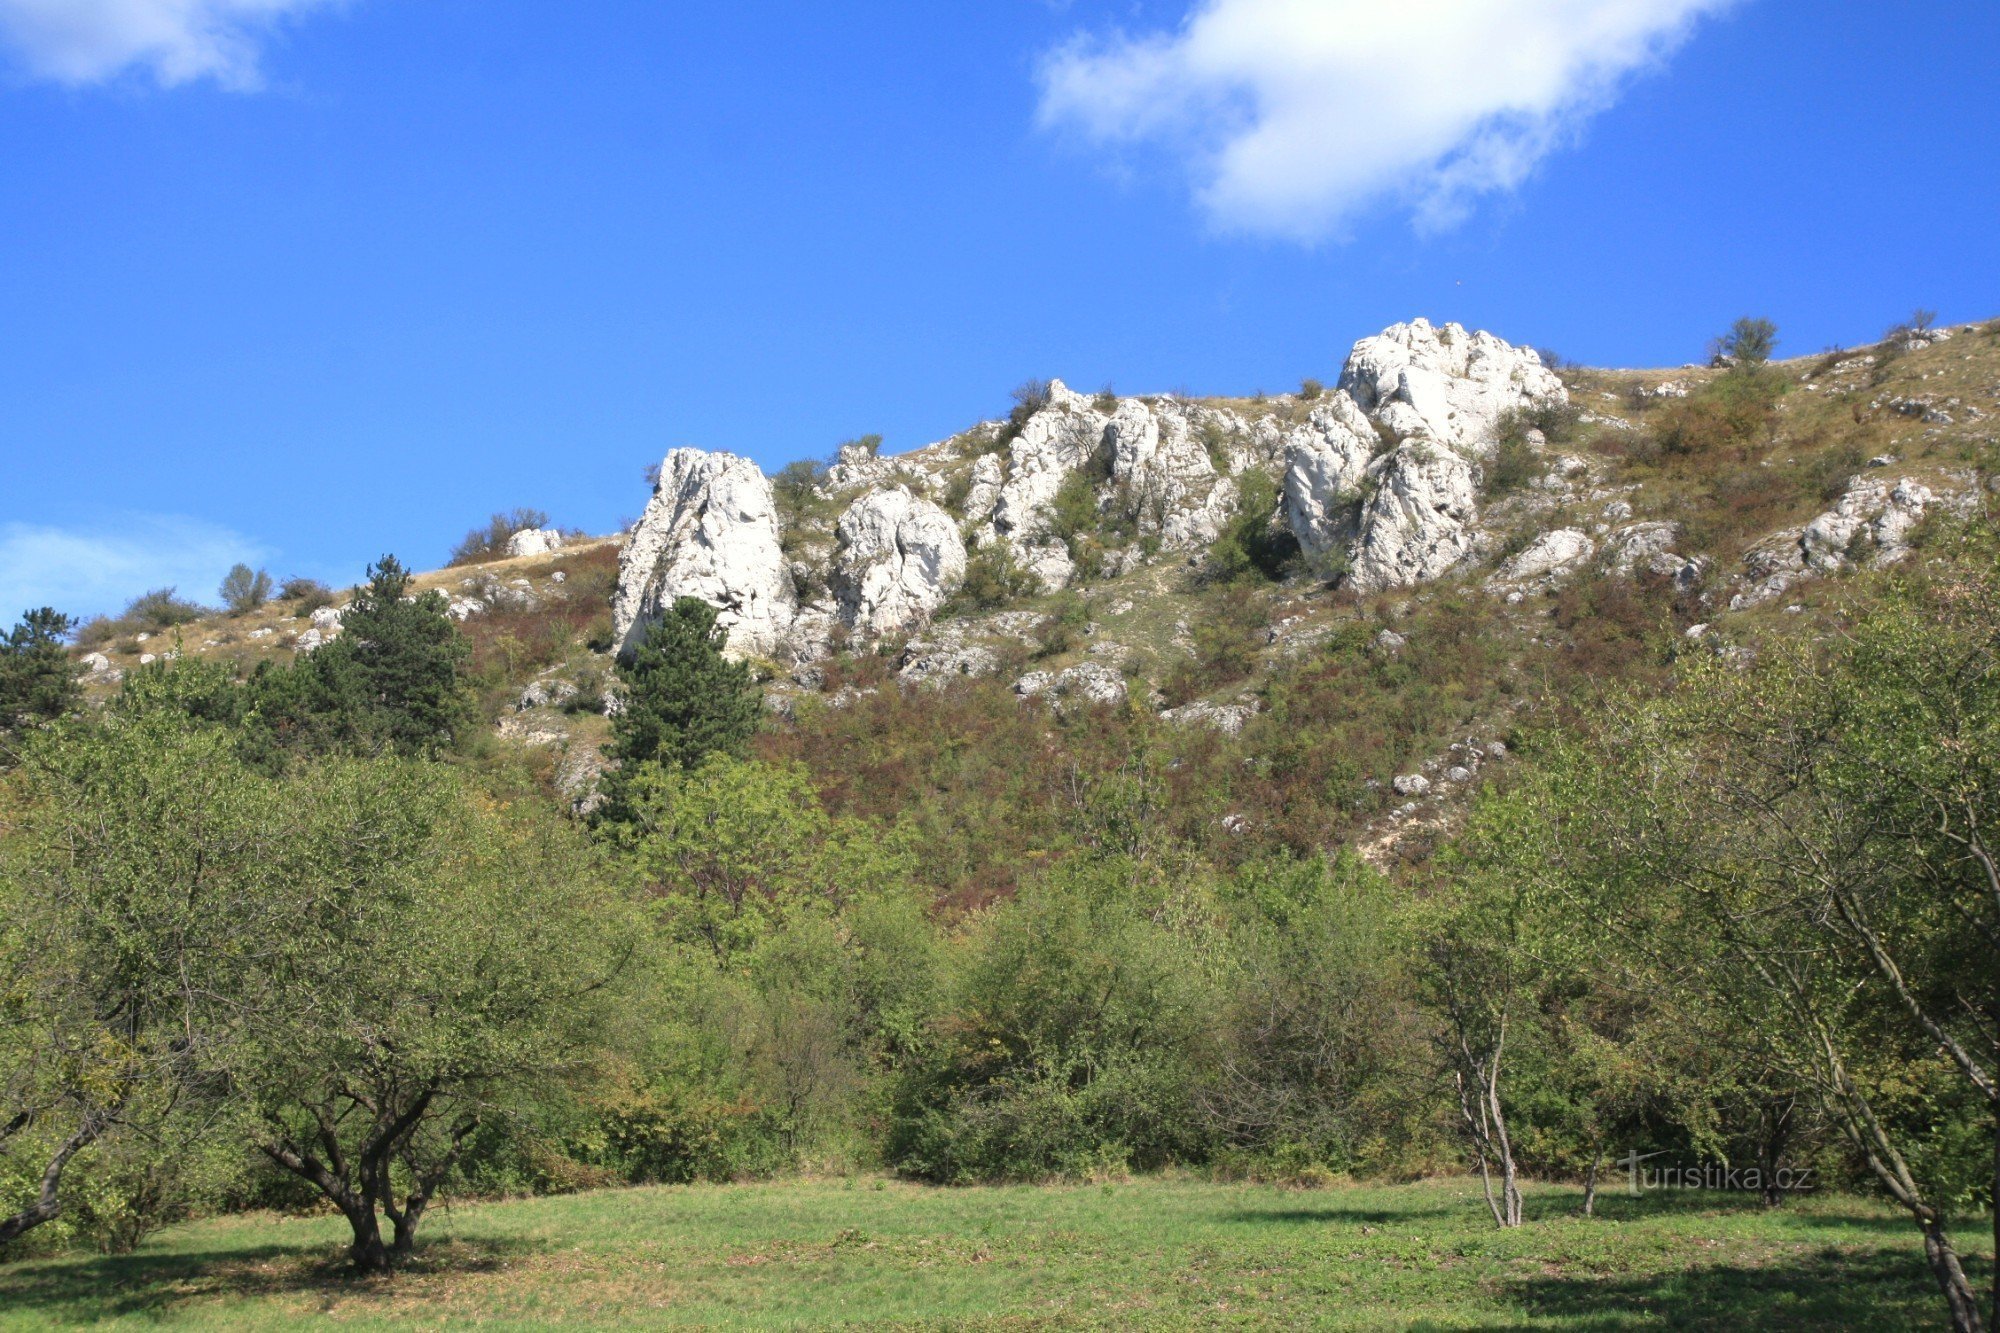 Les rochers bavarois sont également situés sur le versant ouest de la réserve